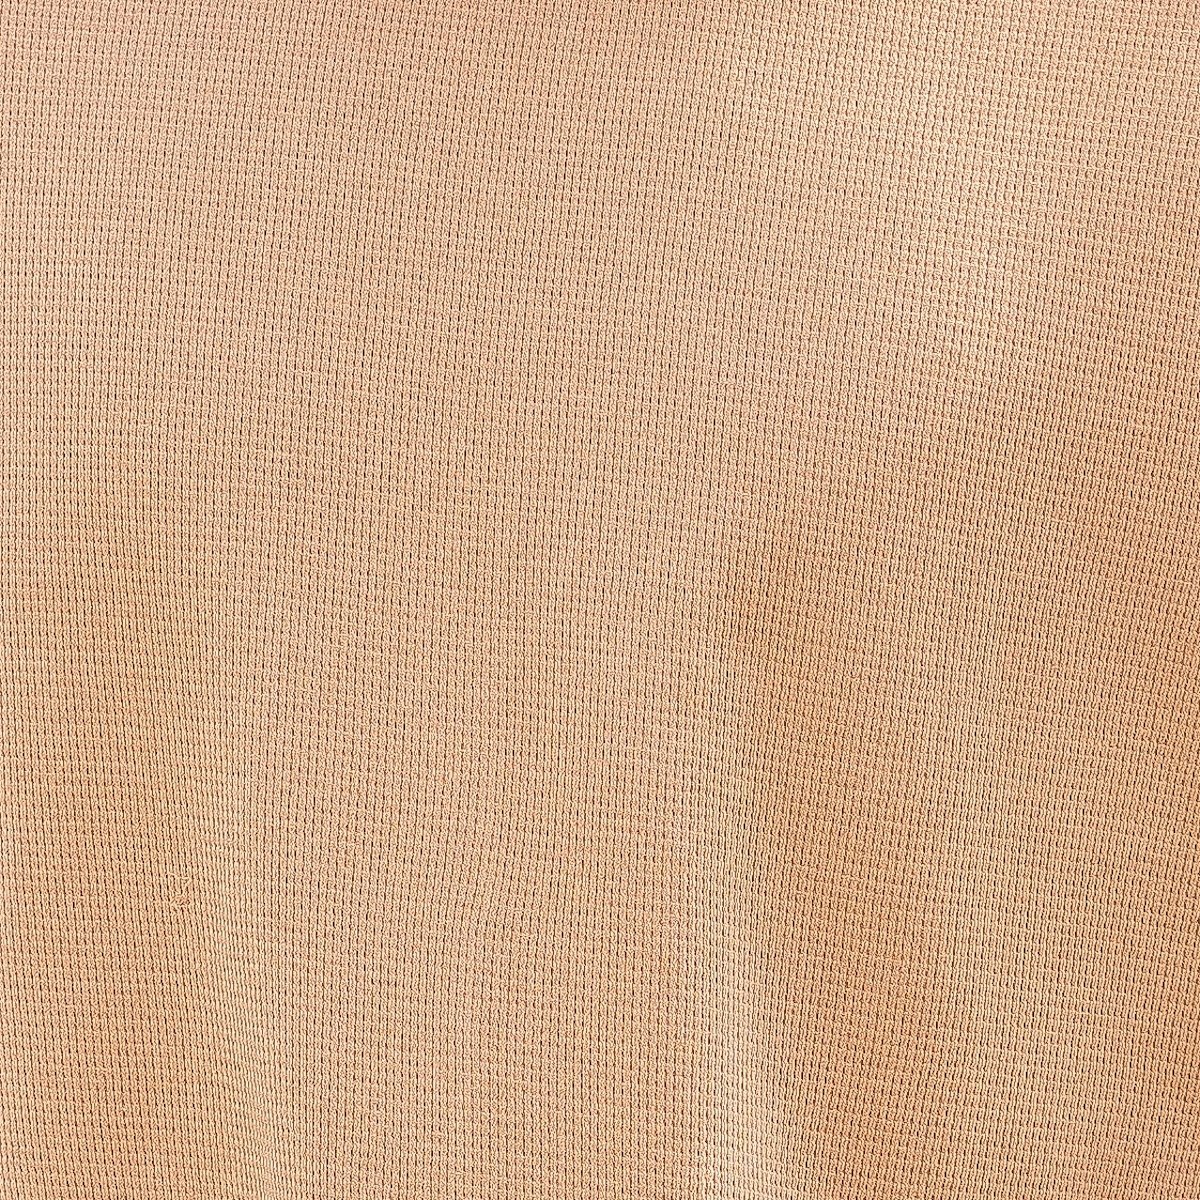 Herren Oversized T-Shirt mit Punkt Struktur in beige - 5